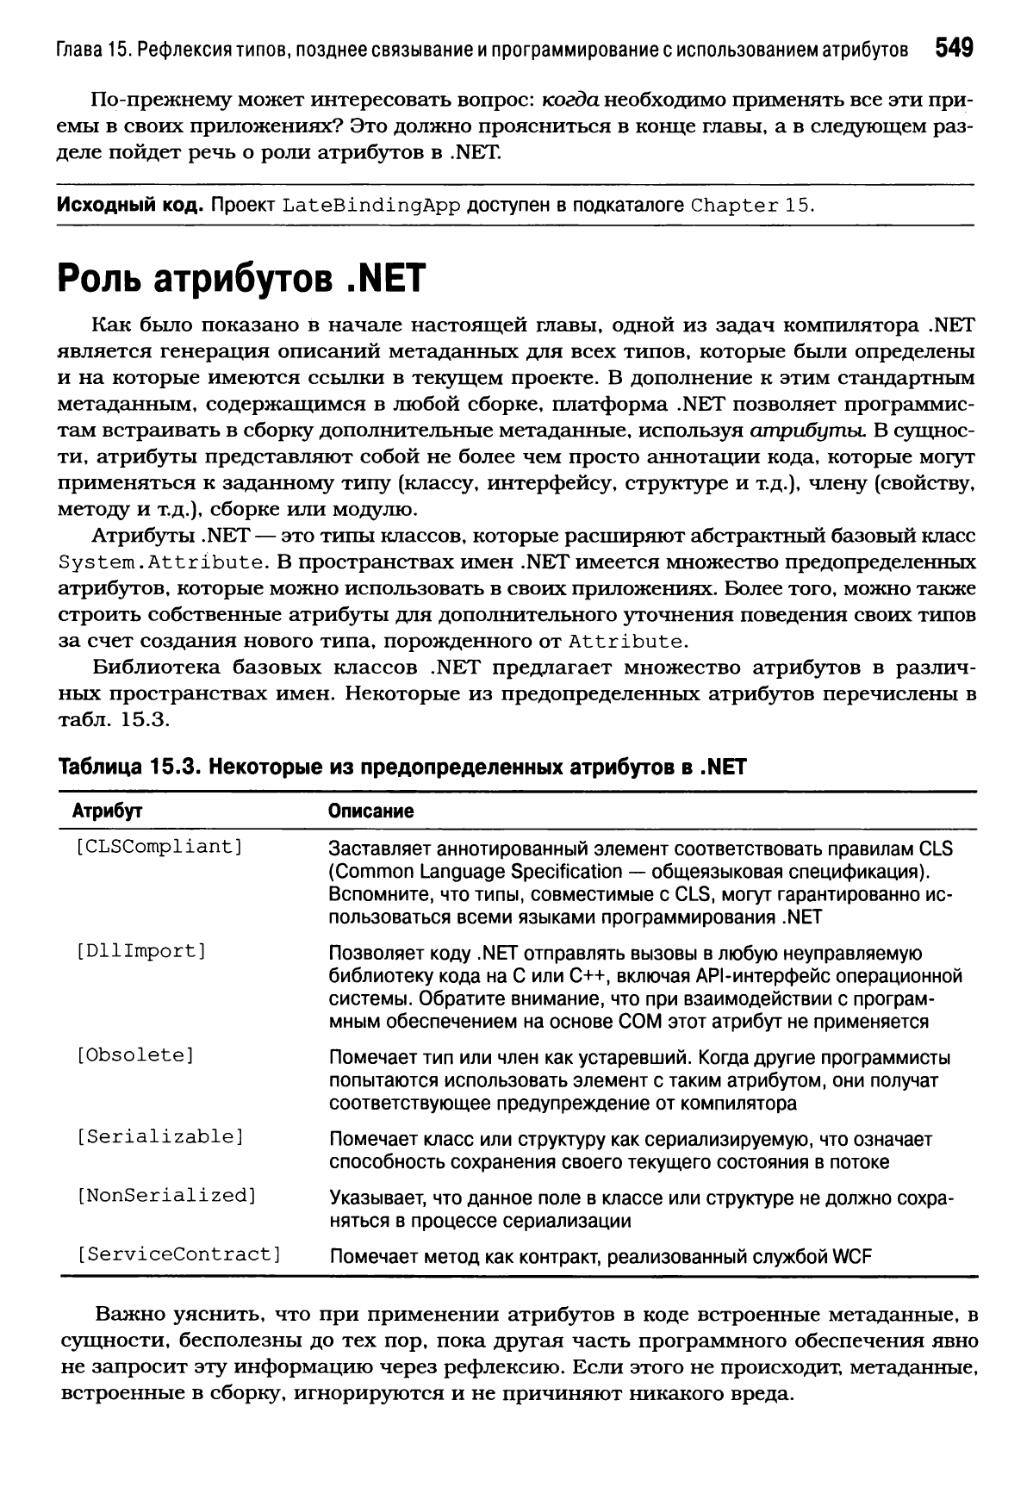 Роль атрибутов .NET